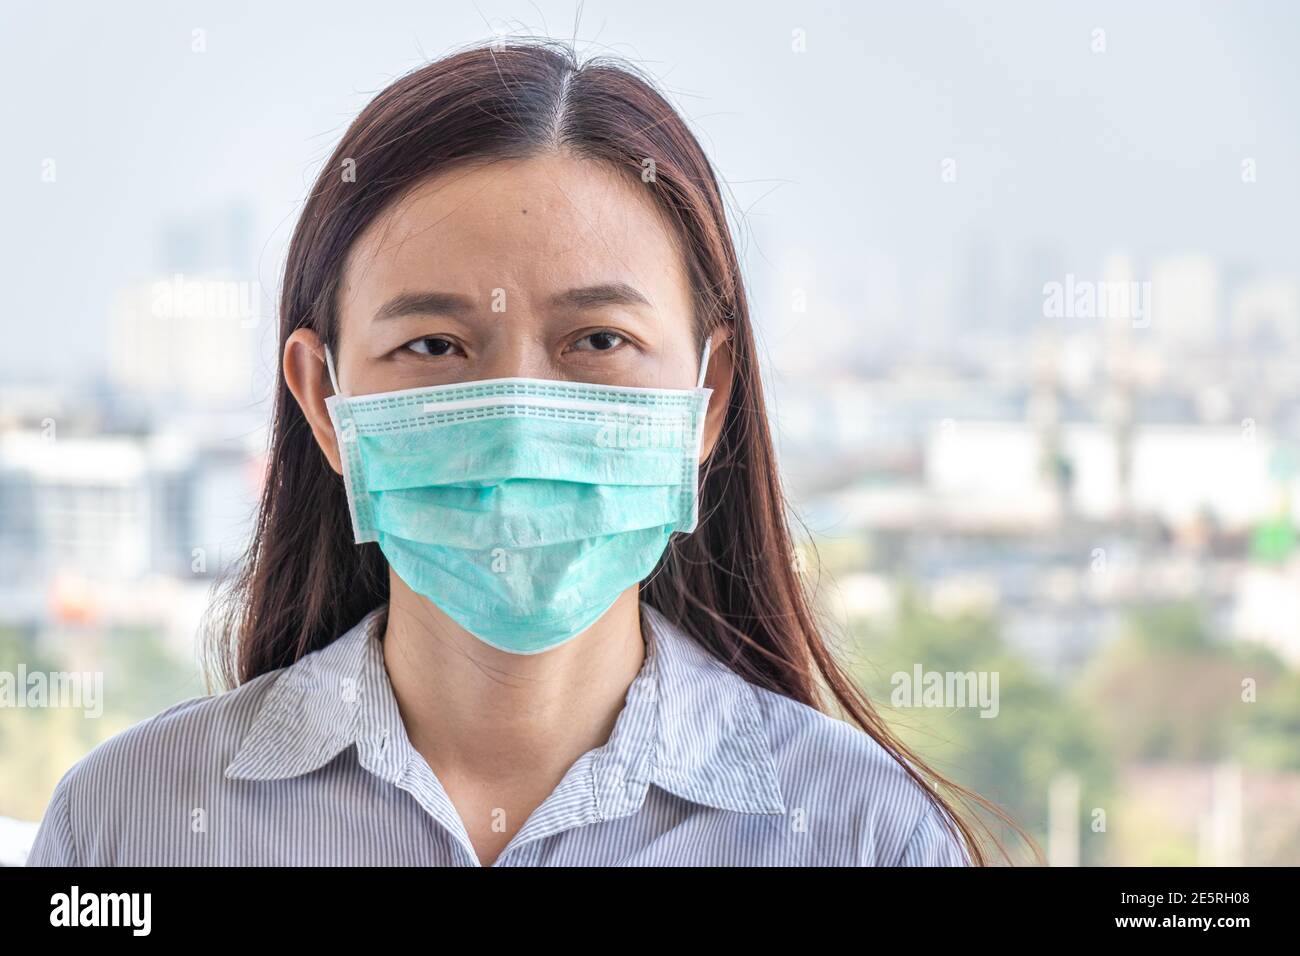 Donna asiatica che indossa una maschera di protezione igienica per prevenire COVID-19, infezione da coronavirus mentre fuori casa durante la trasmissione epidemica di virus covid Foto Stock